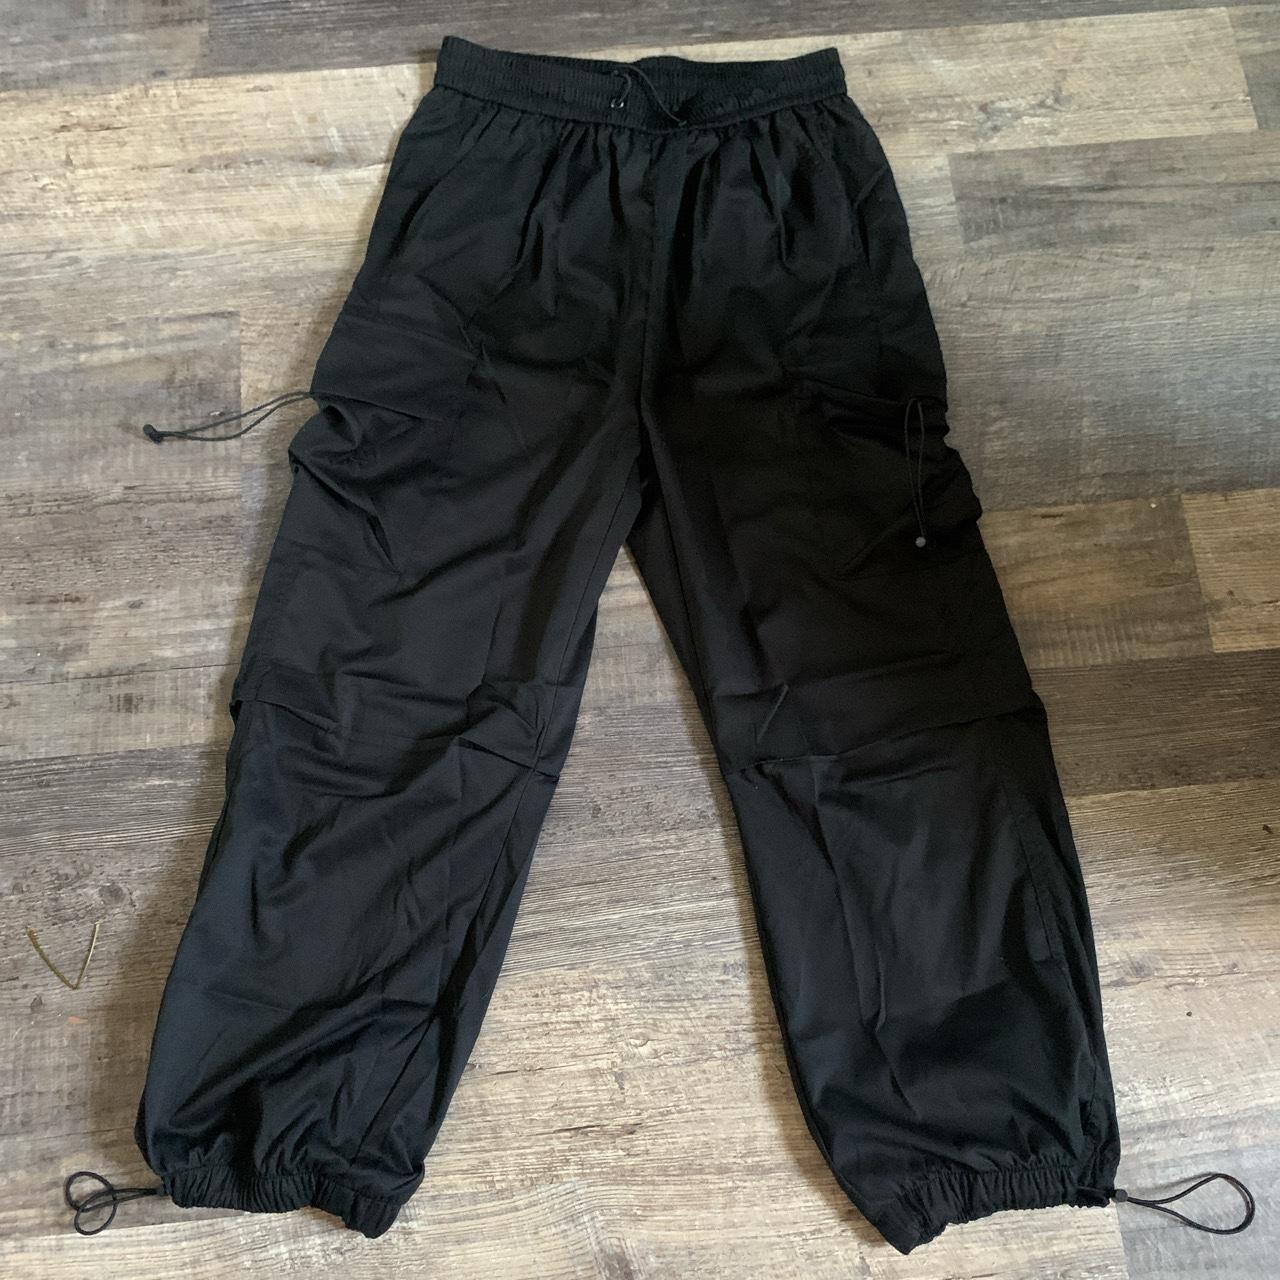 black parachute cargo pants - Depop